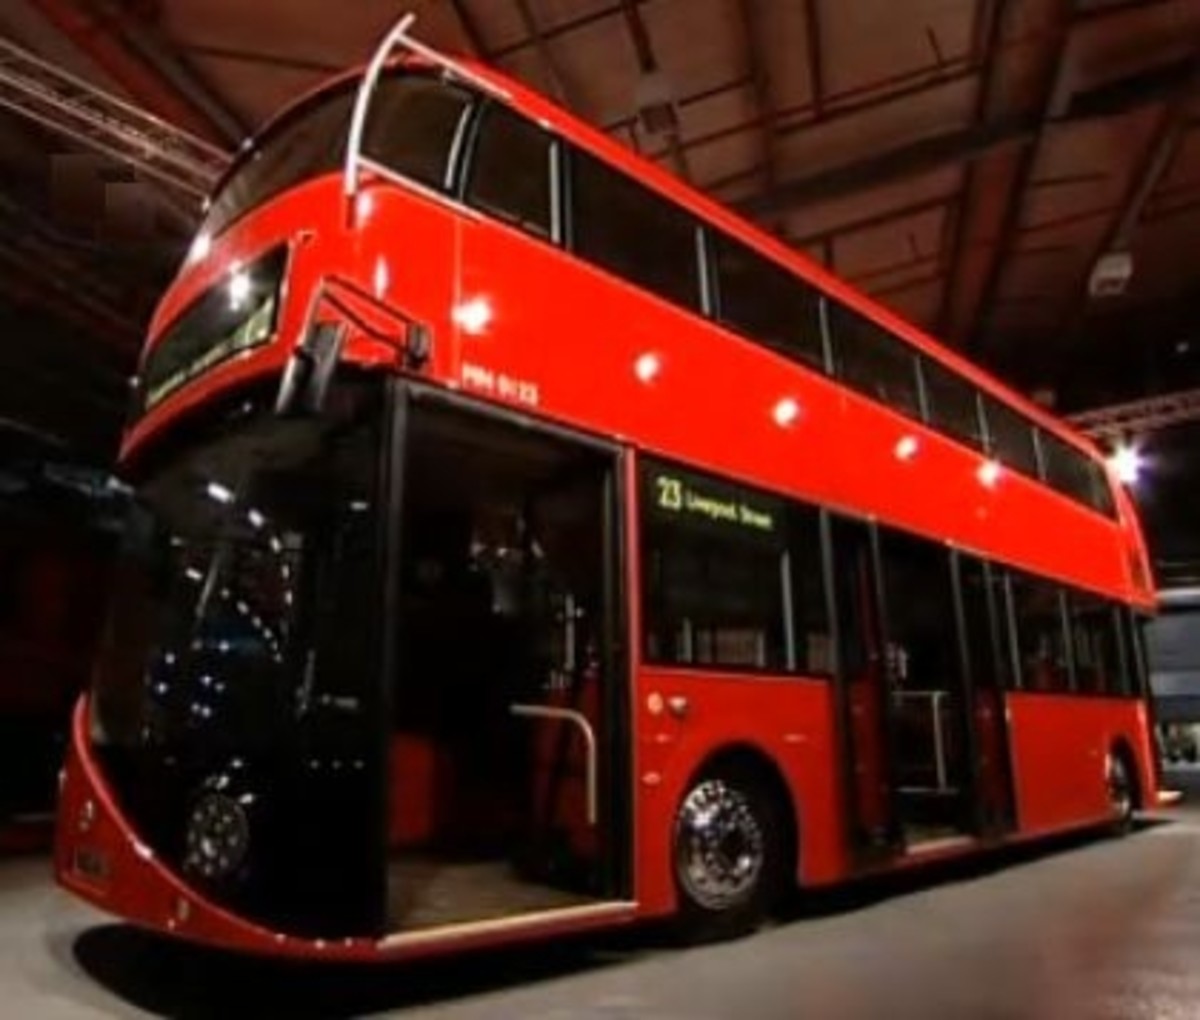 tour master bus